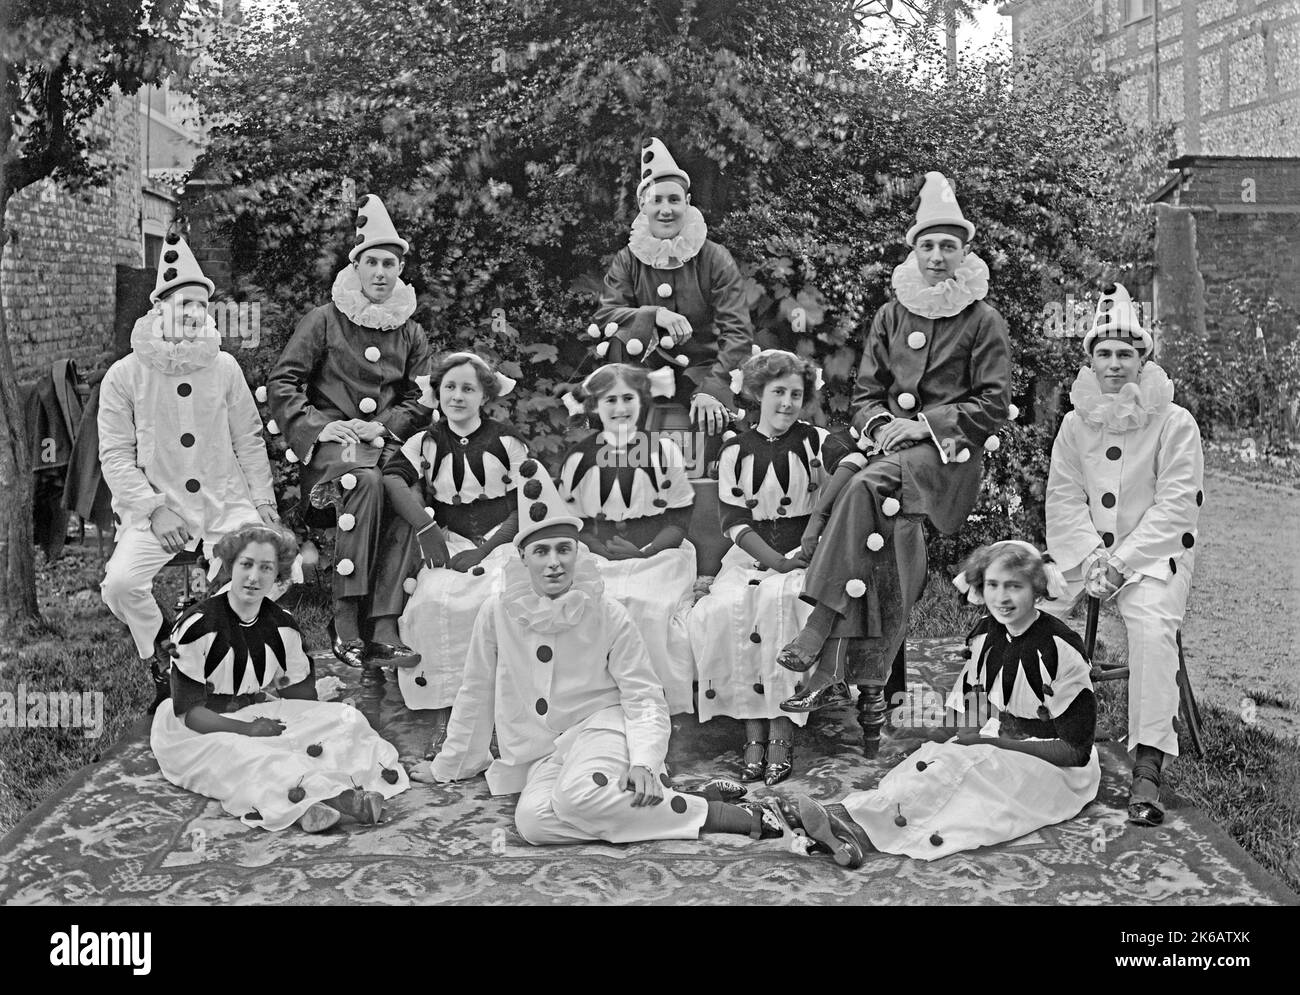 Un gruppo di uomini e donne che indossano costumi Pierrot (clown), Norfolk, Inghilterra, UK c. 1930. A Pierrot è un personaggio di pantomime e commedia dell’arte, le cui origini sono nella troupe italiana del tardo Seicento di giocatori che si esibiscono a Parigi e che si chiama Comédie-Italienne. Questo è tratto da un vecchio negativo in bianco e nero – una fotografia vintage 1920s/30s. Foto Stock